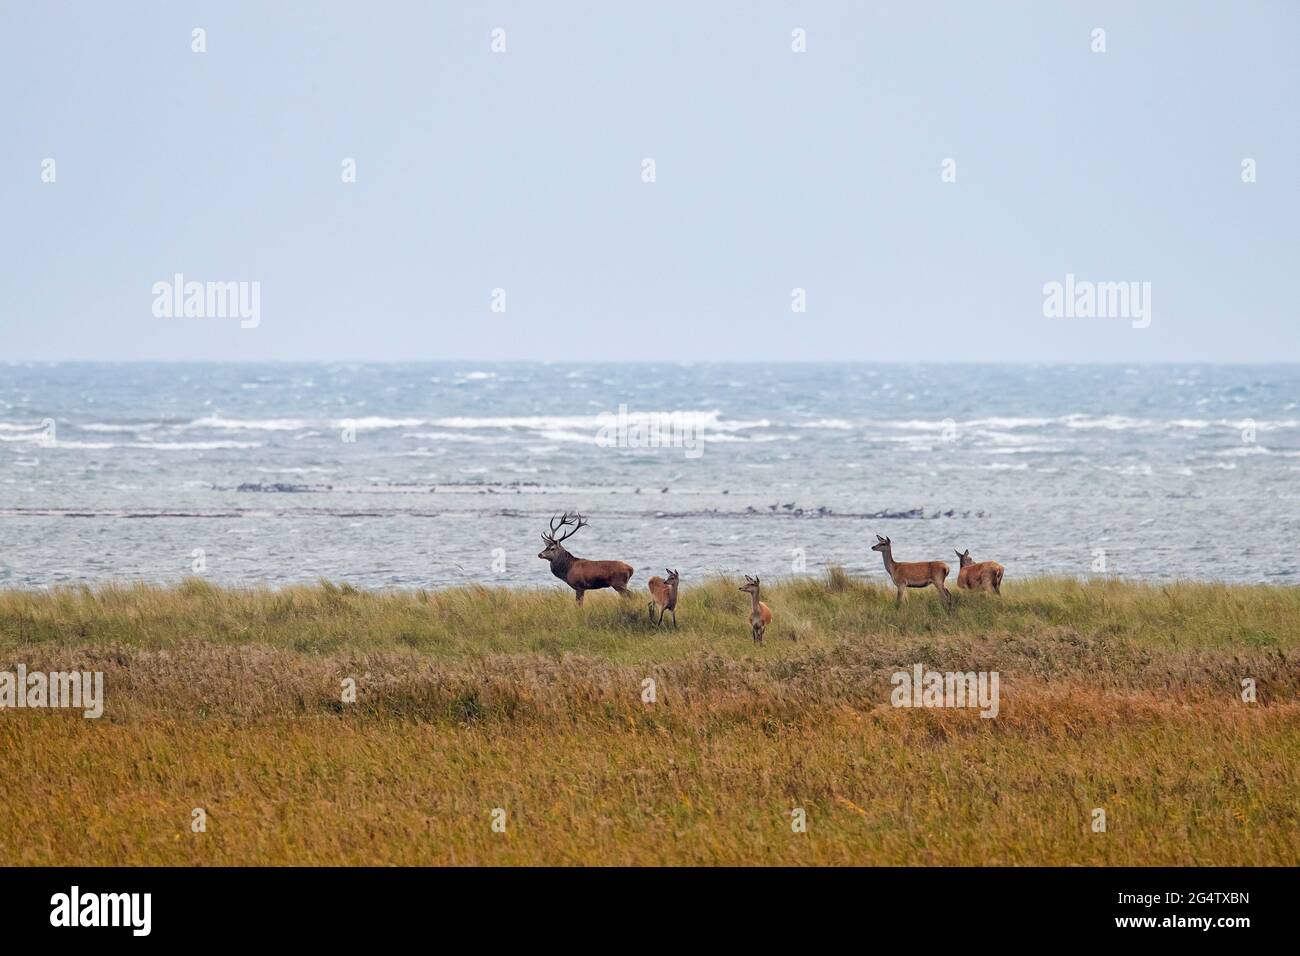 Cerf rouge stag avec des femelles dans les dunes le long de la mer Baltique, région de la lagune de Poméranie occidentale NP, Mecklembourg-Poméranie occidentale, Allemagne Banque D'Images